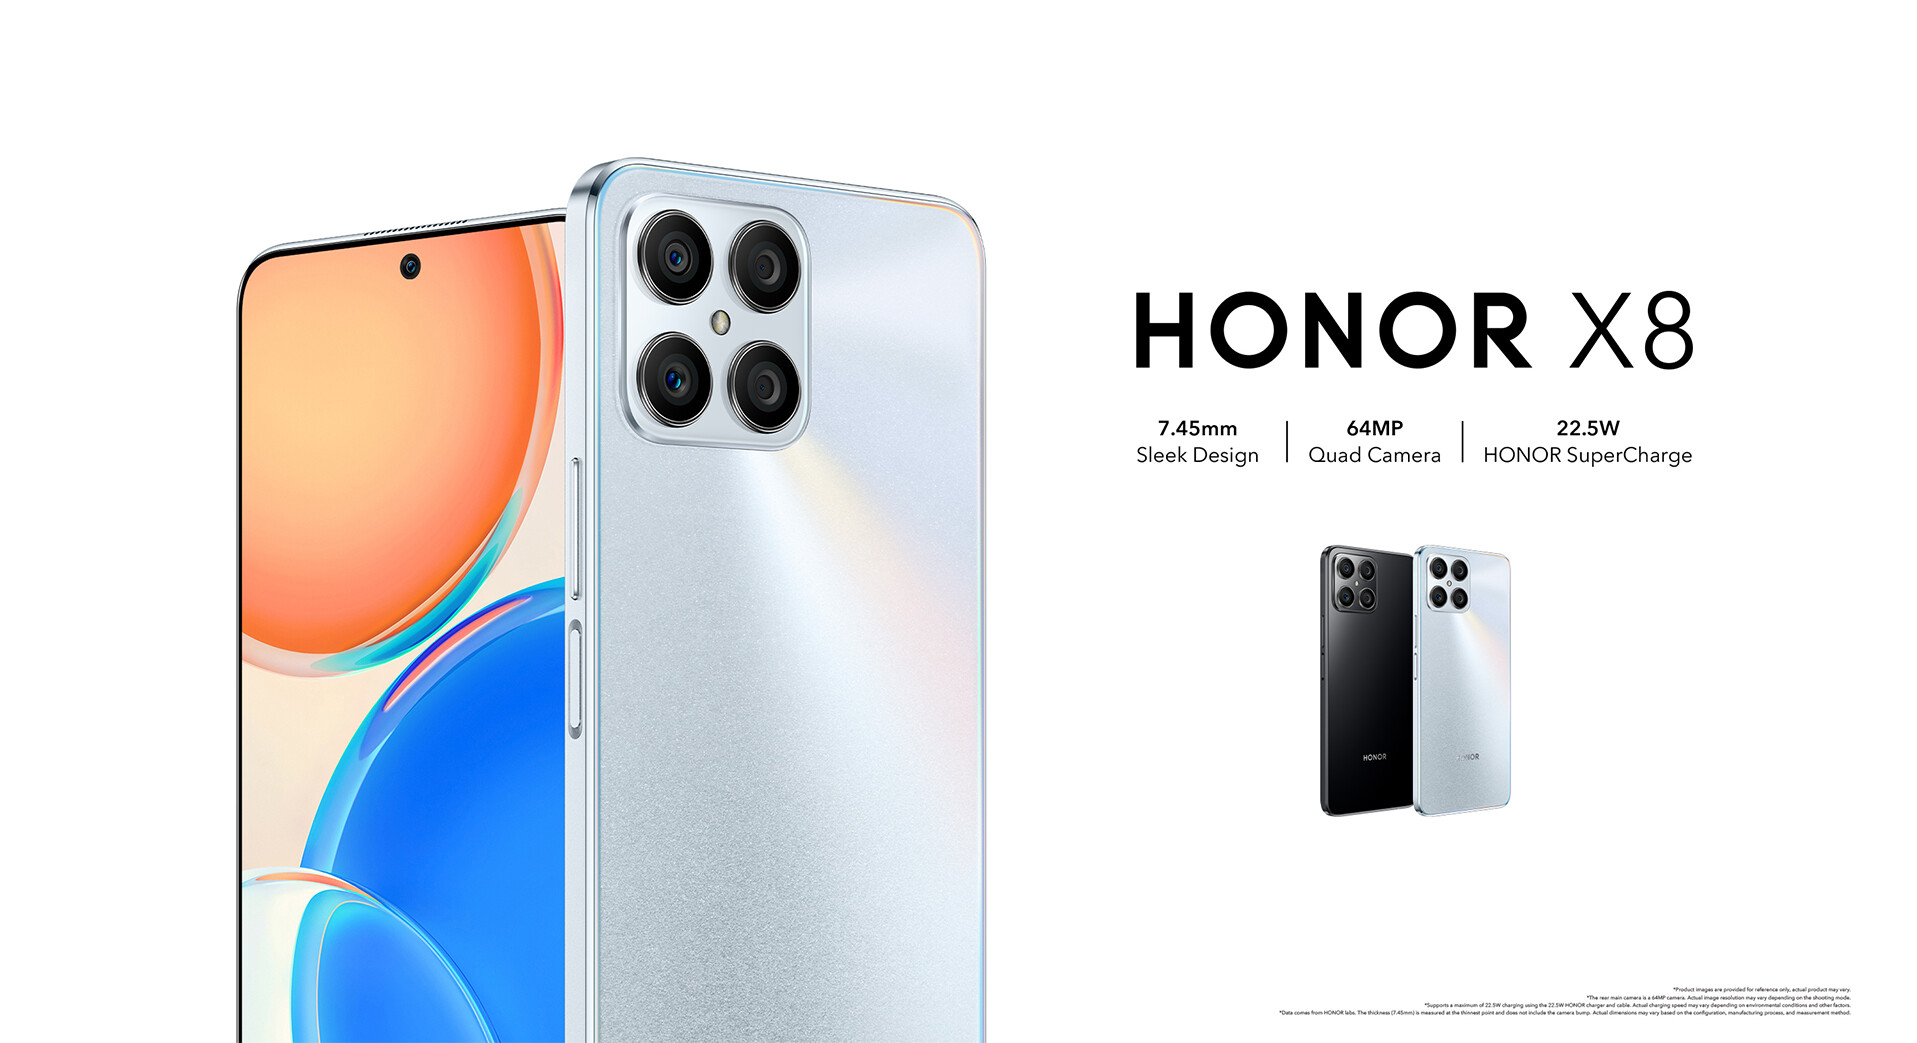 Honor X8 headline image